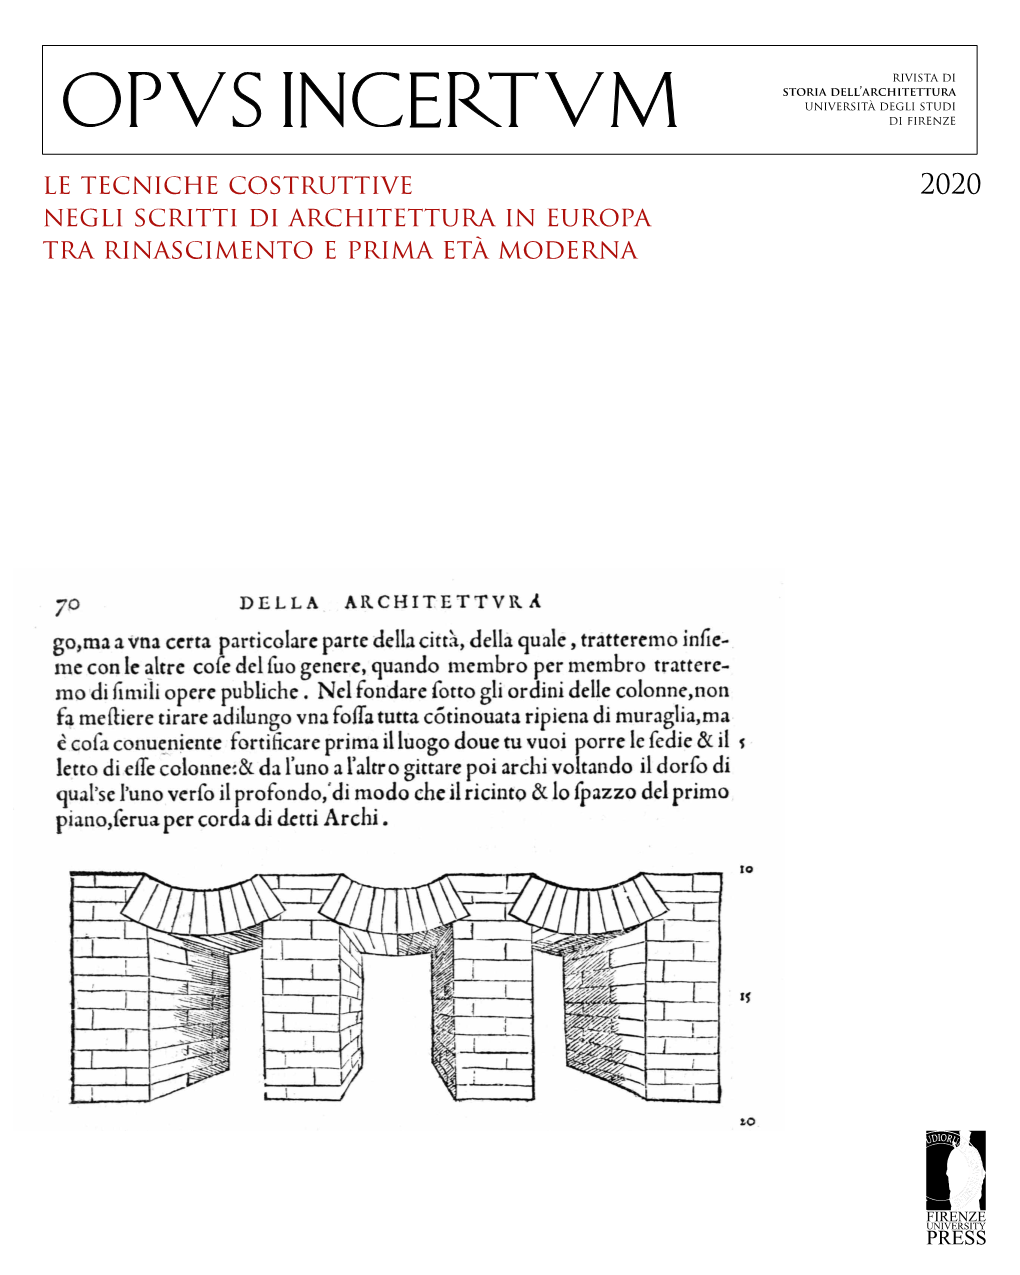 2020 Le Tecniche Costruttive Negli Scritti Di Architettura in Europa Tra